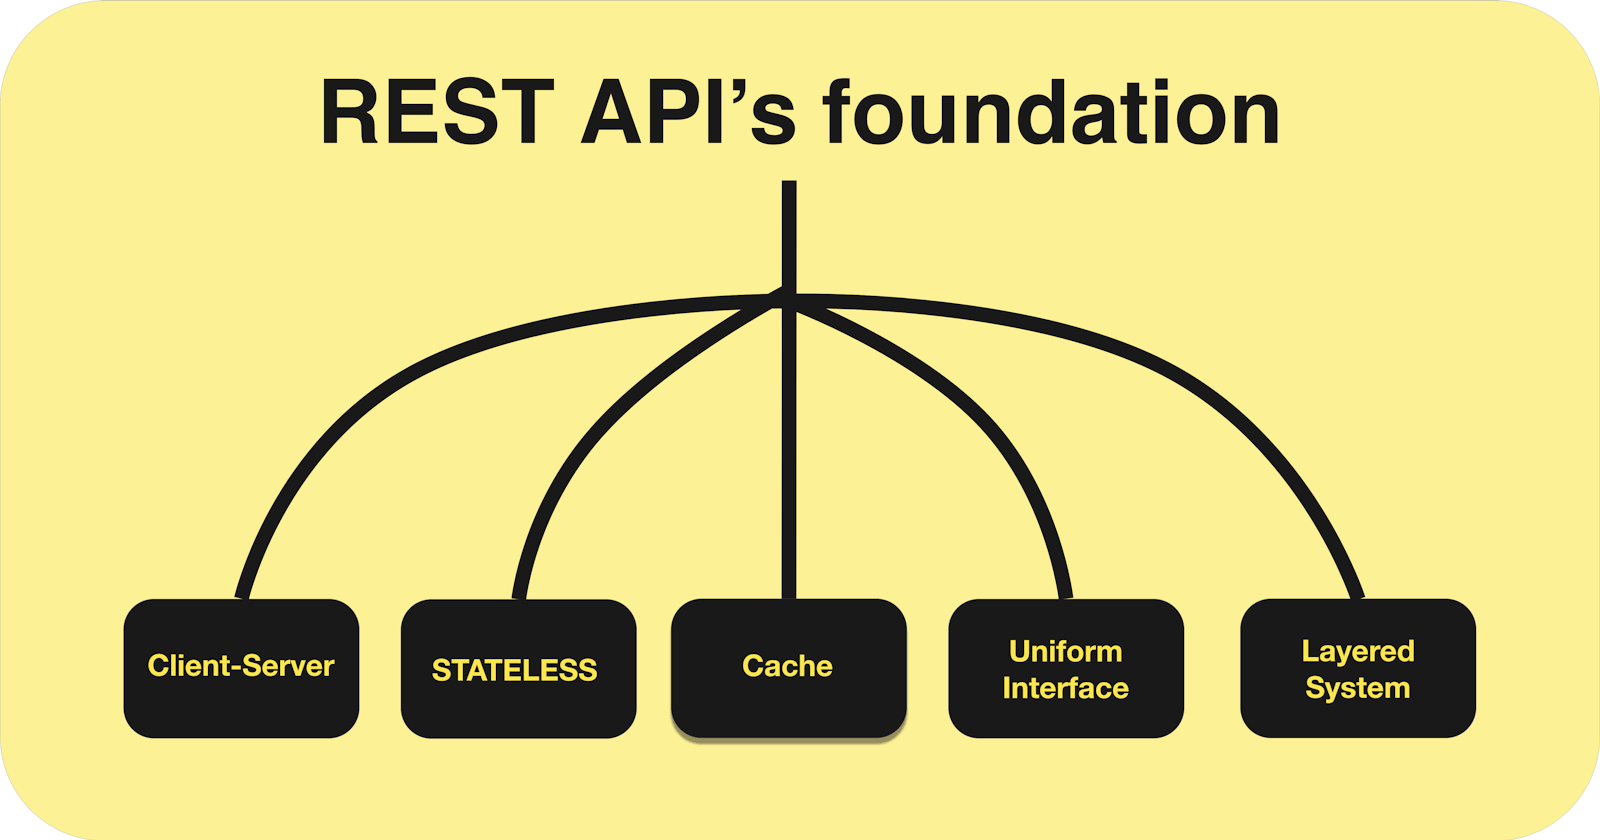 Basics about REST API’s